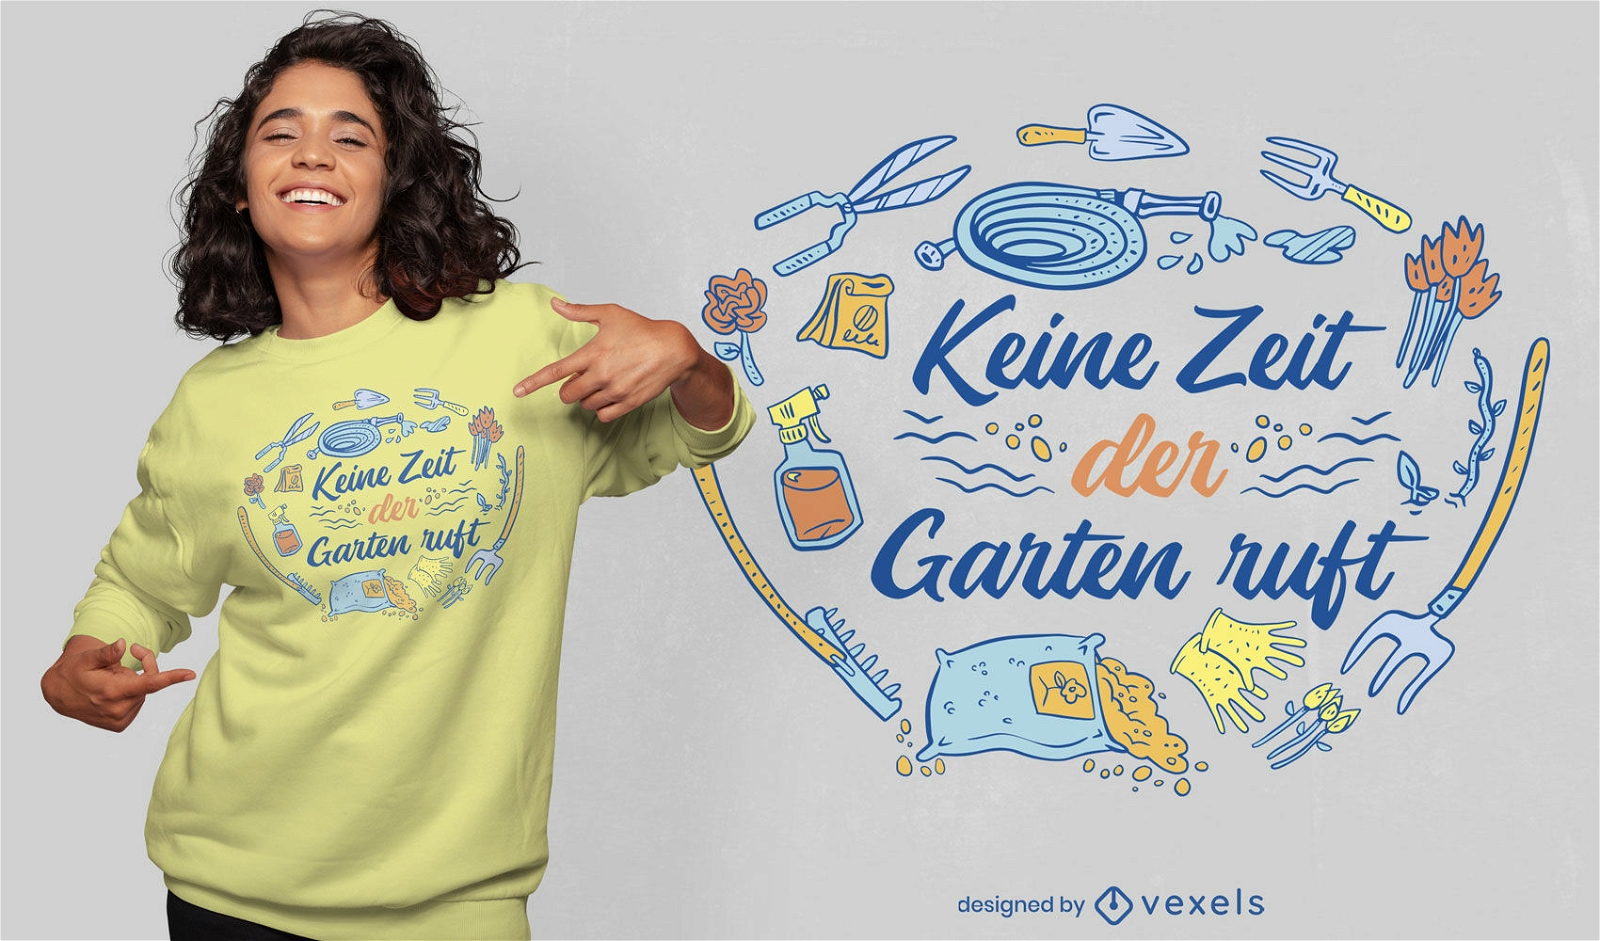 Cooles deutsches T-Shirt Design f?r die Gartenarbeit